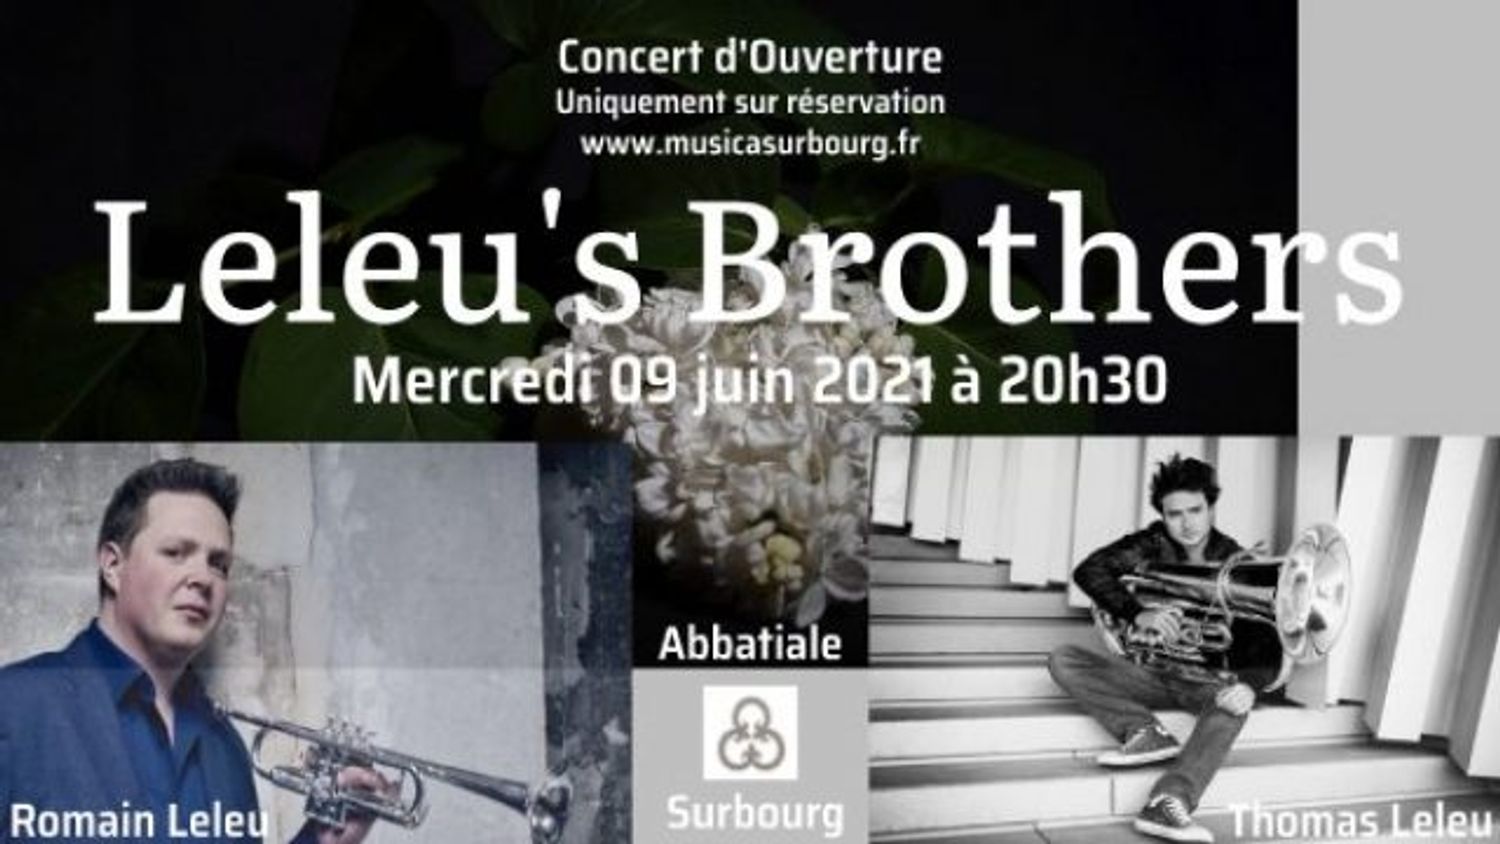 Leleu’s Brothers Concert